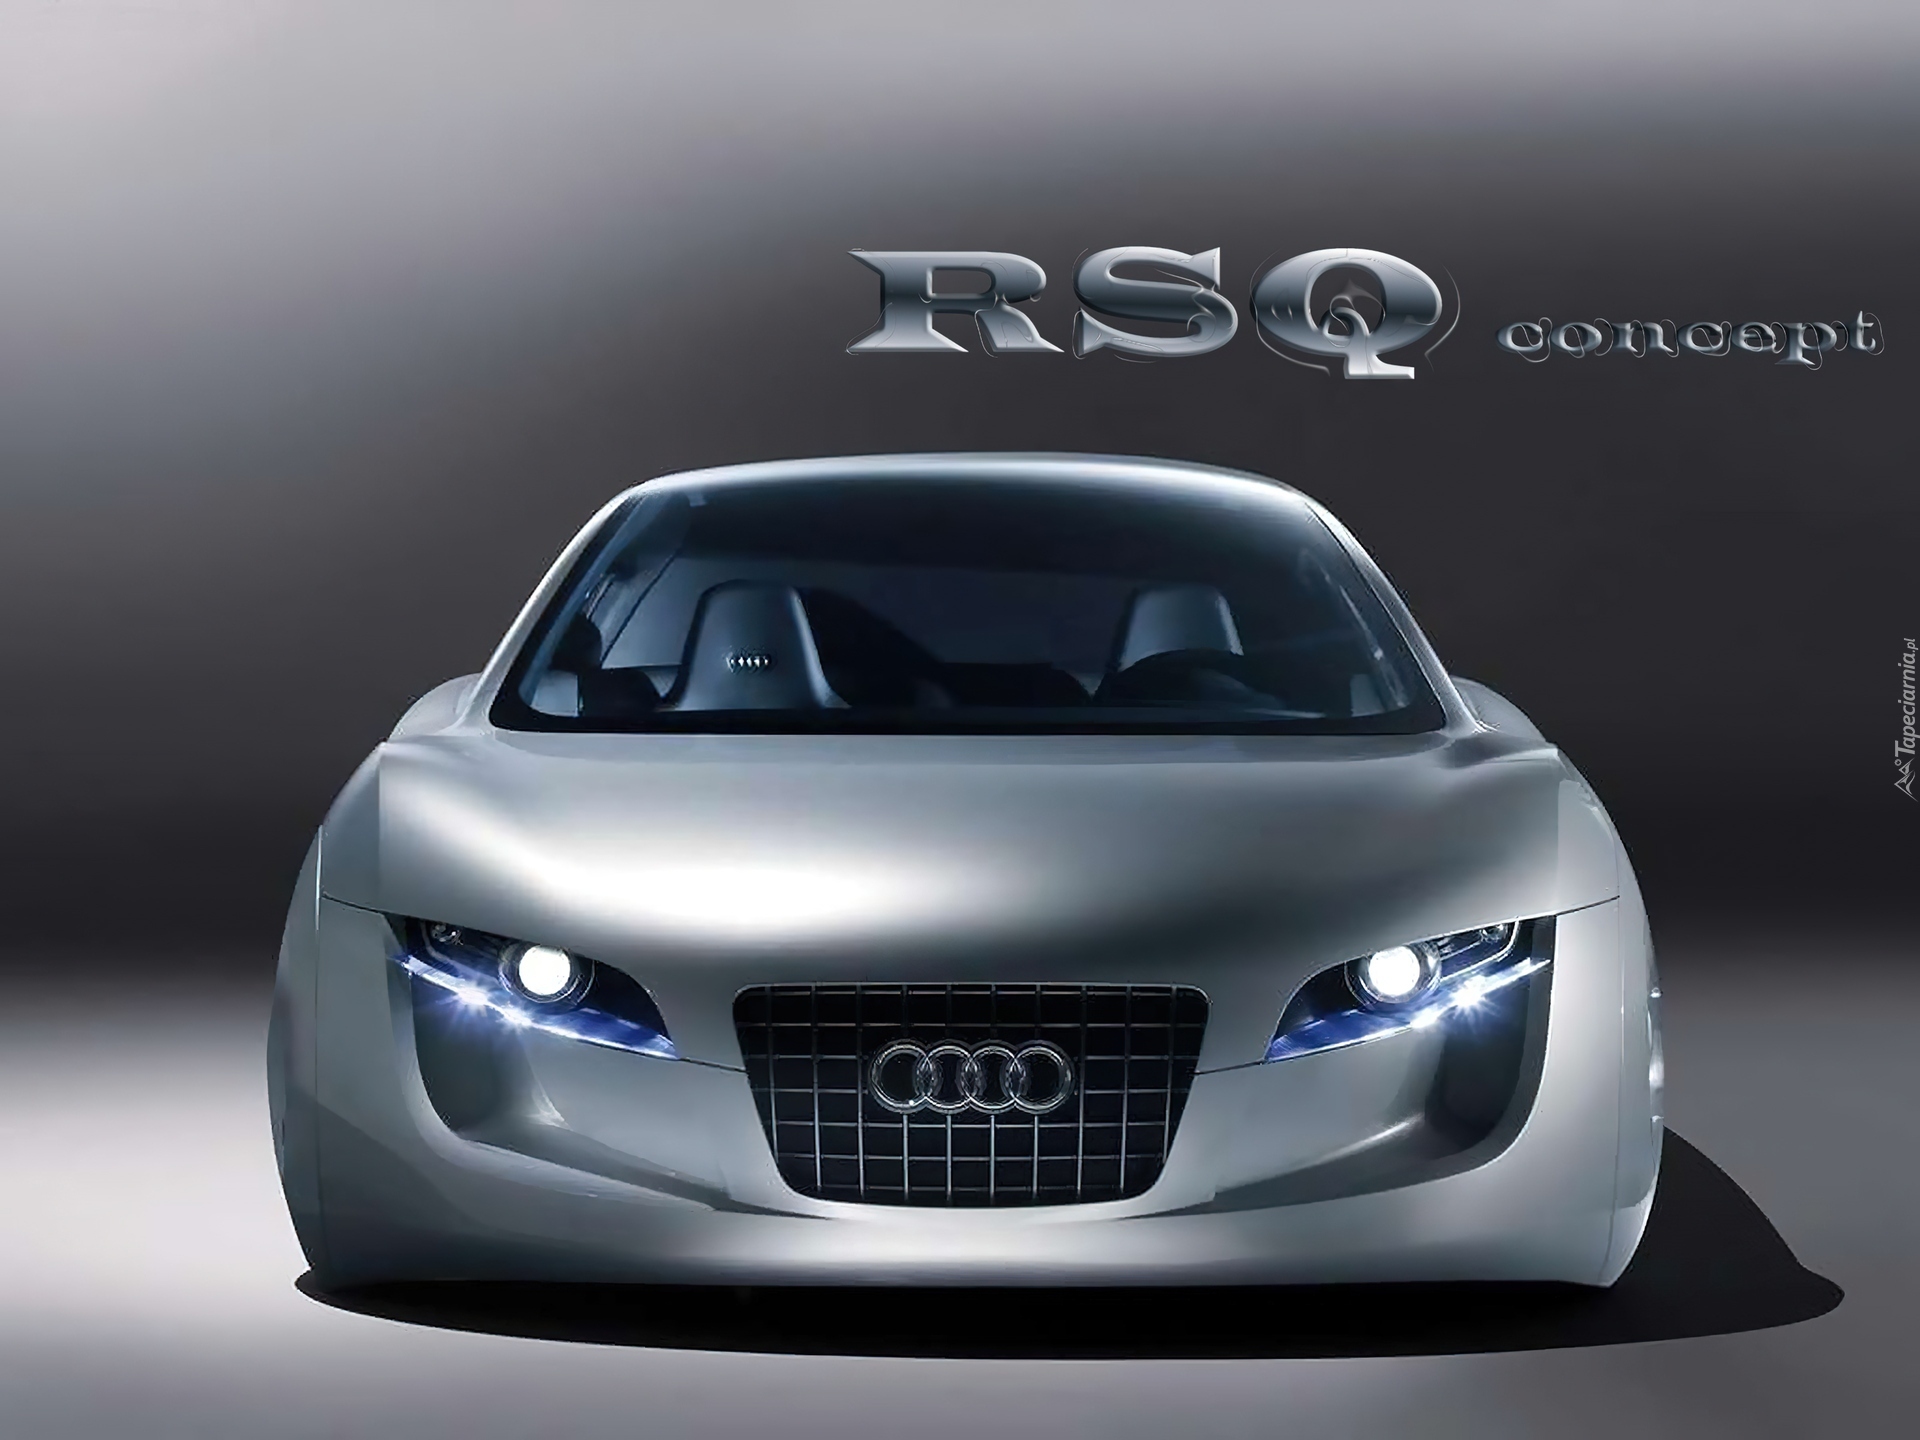 Audi RSQ, Prototyp